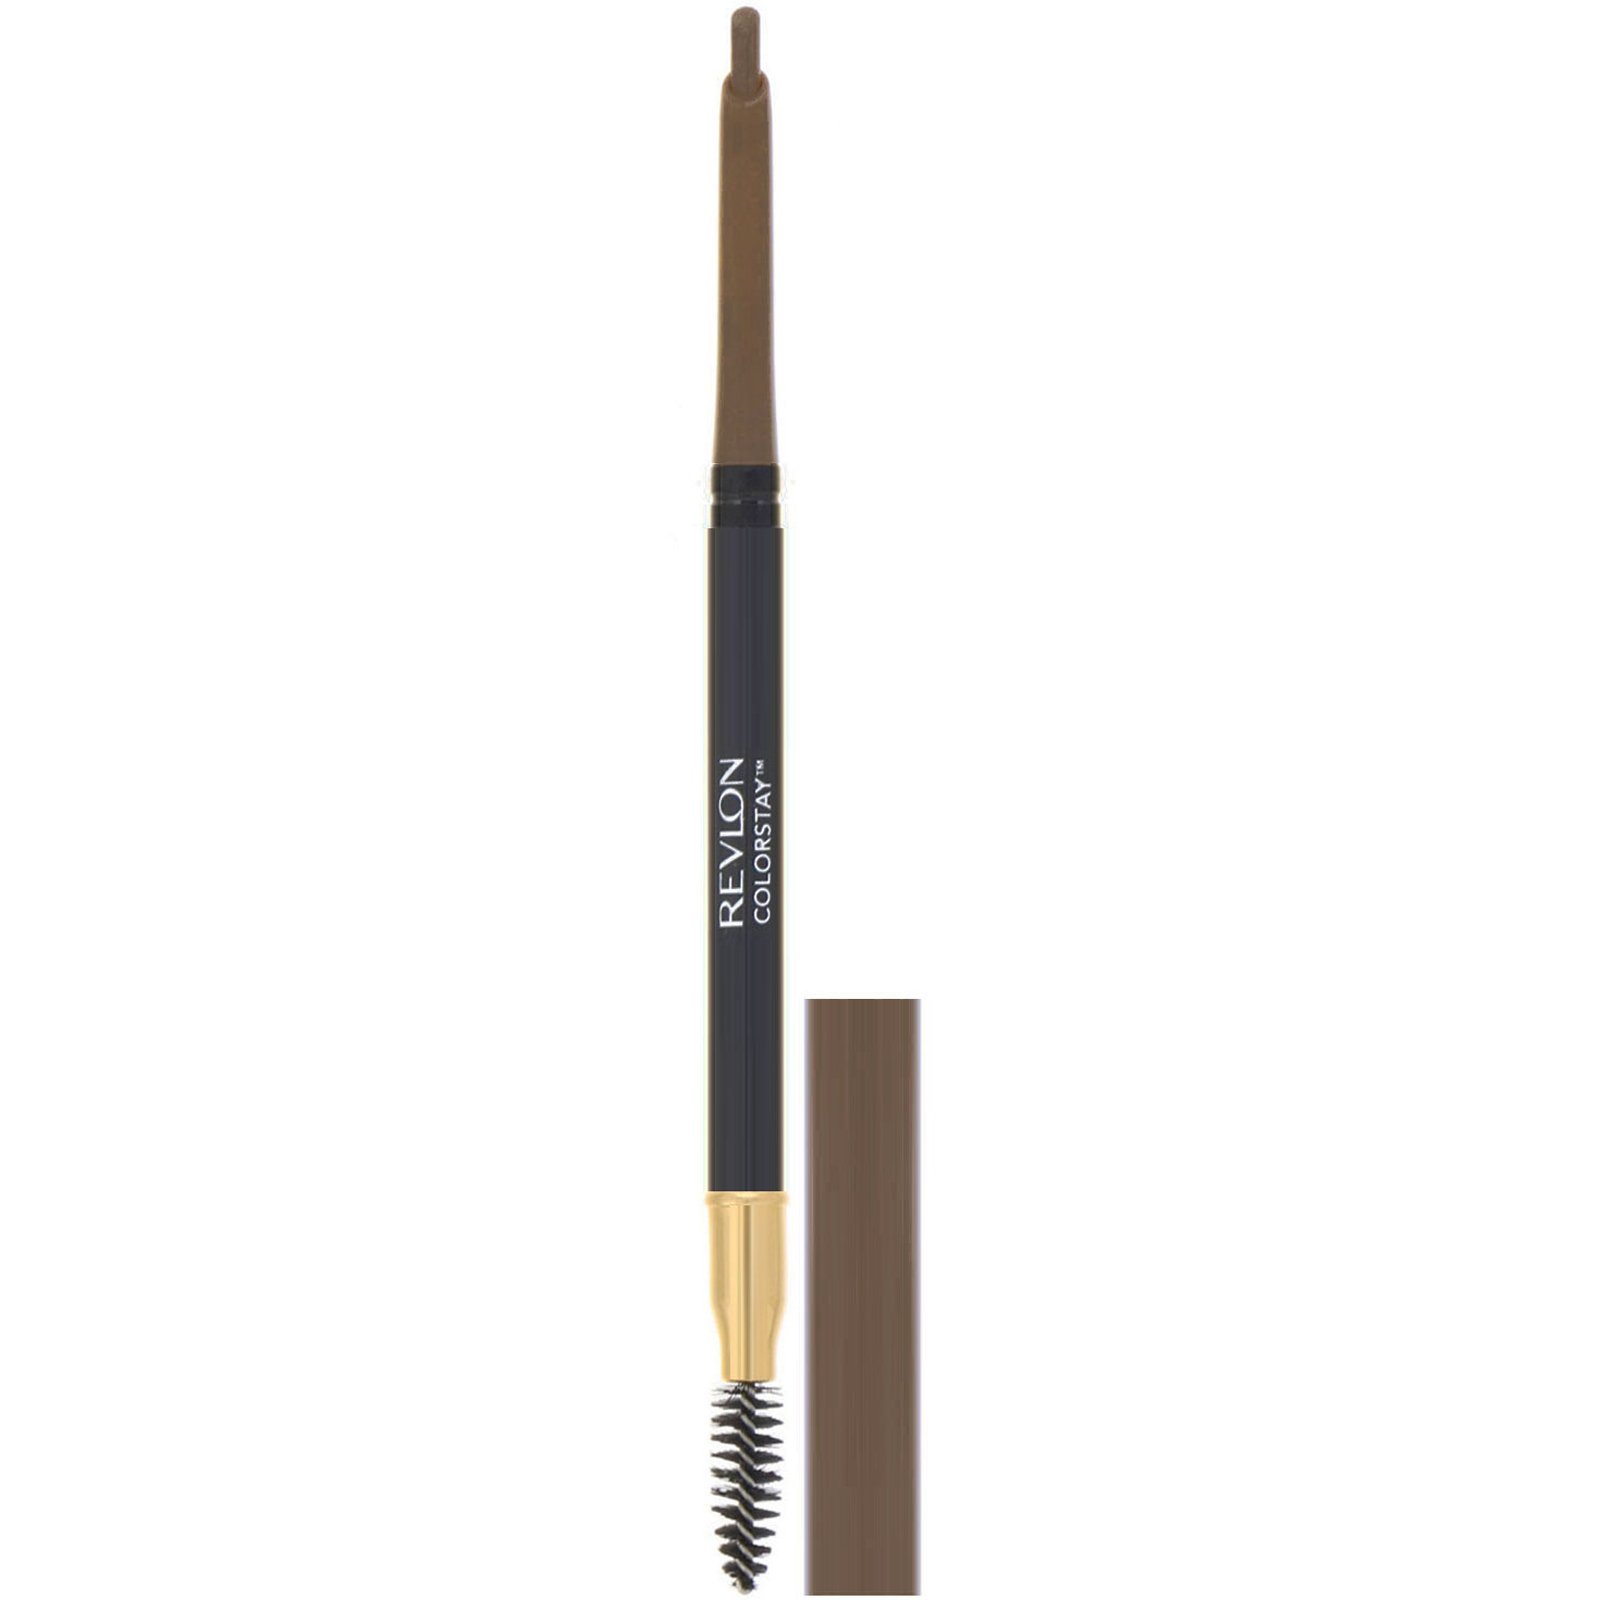 Олівець для брів Revlon Colorstay Brow Pencil Soft Brown тон 210, 0.35 г (435827) - фото 1